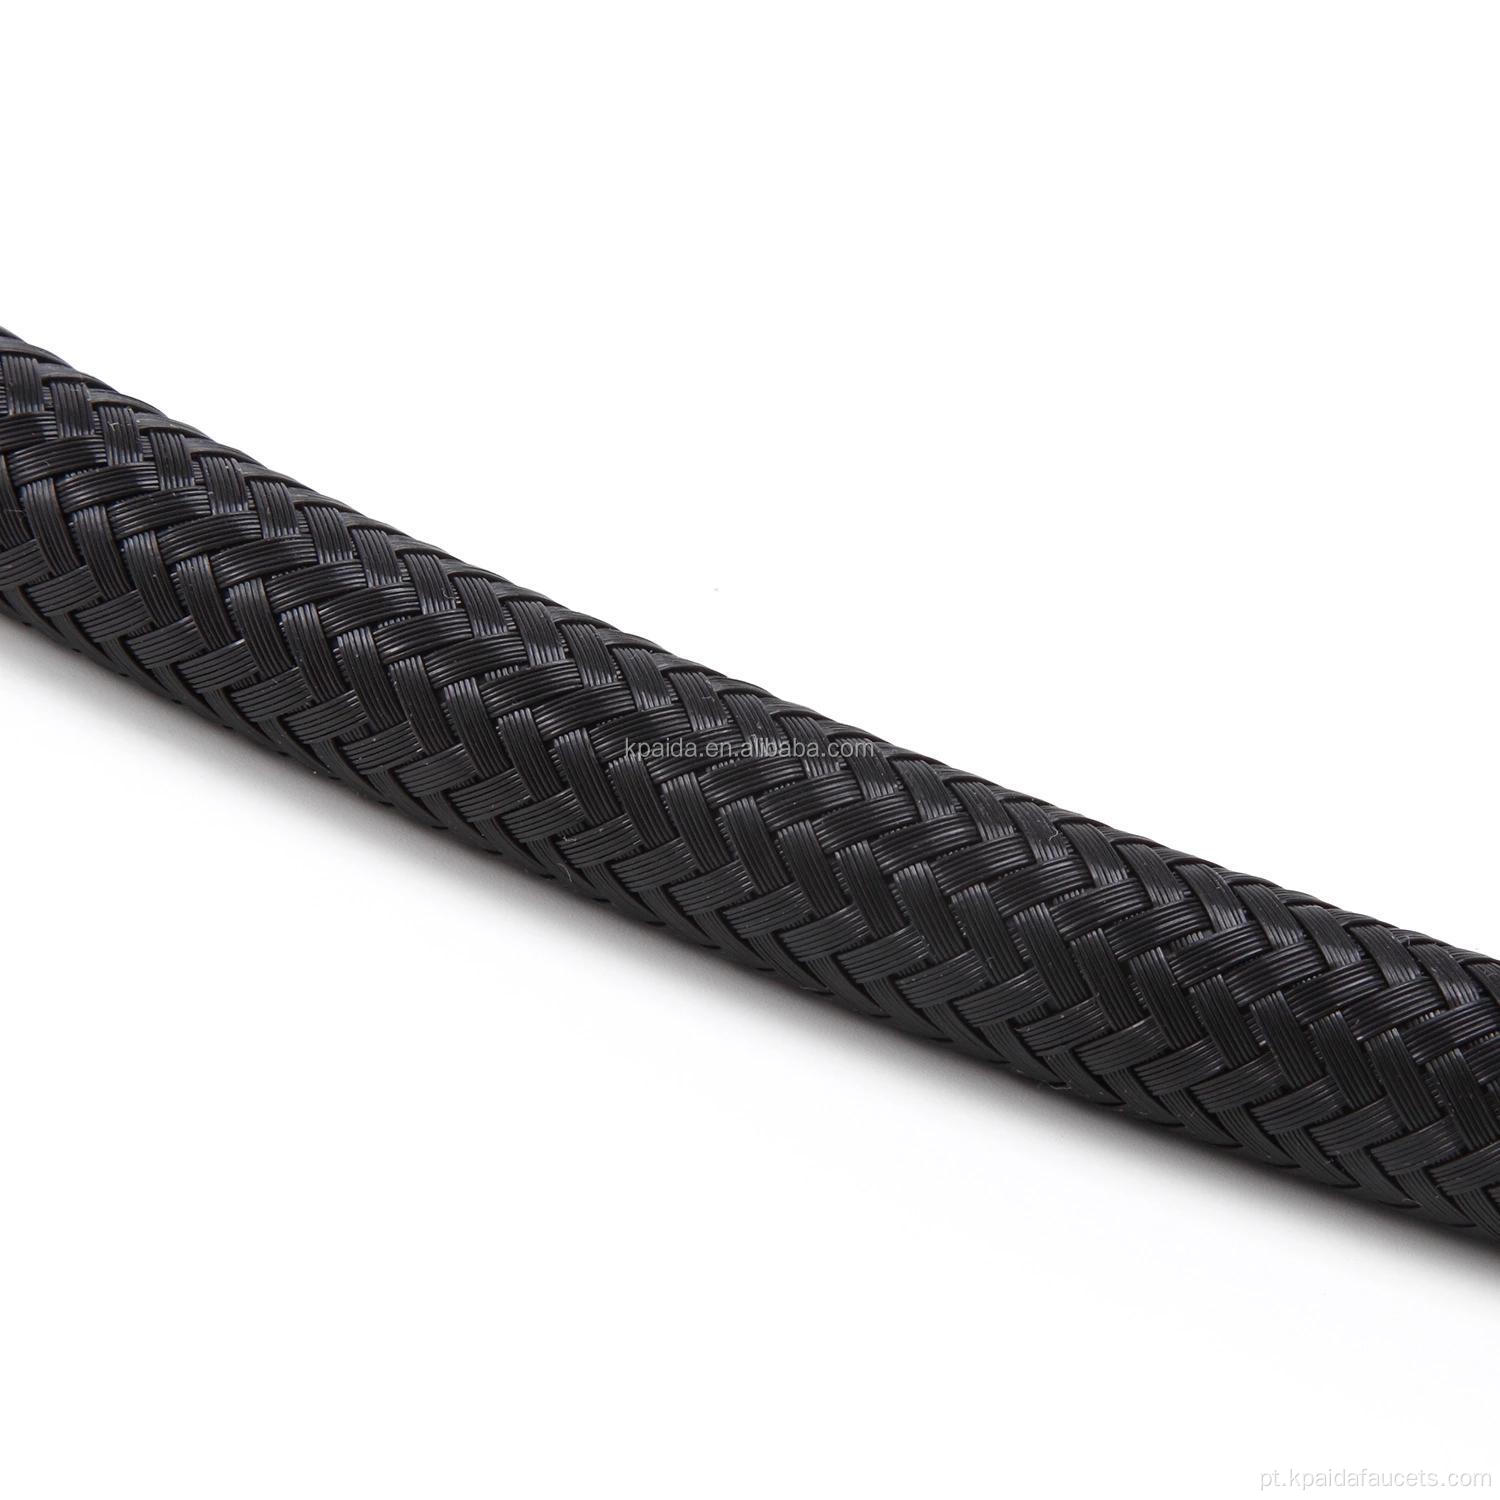 Mangueira de torneira flexível de nylon preta trançada